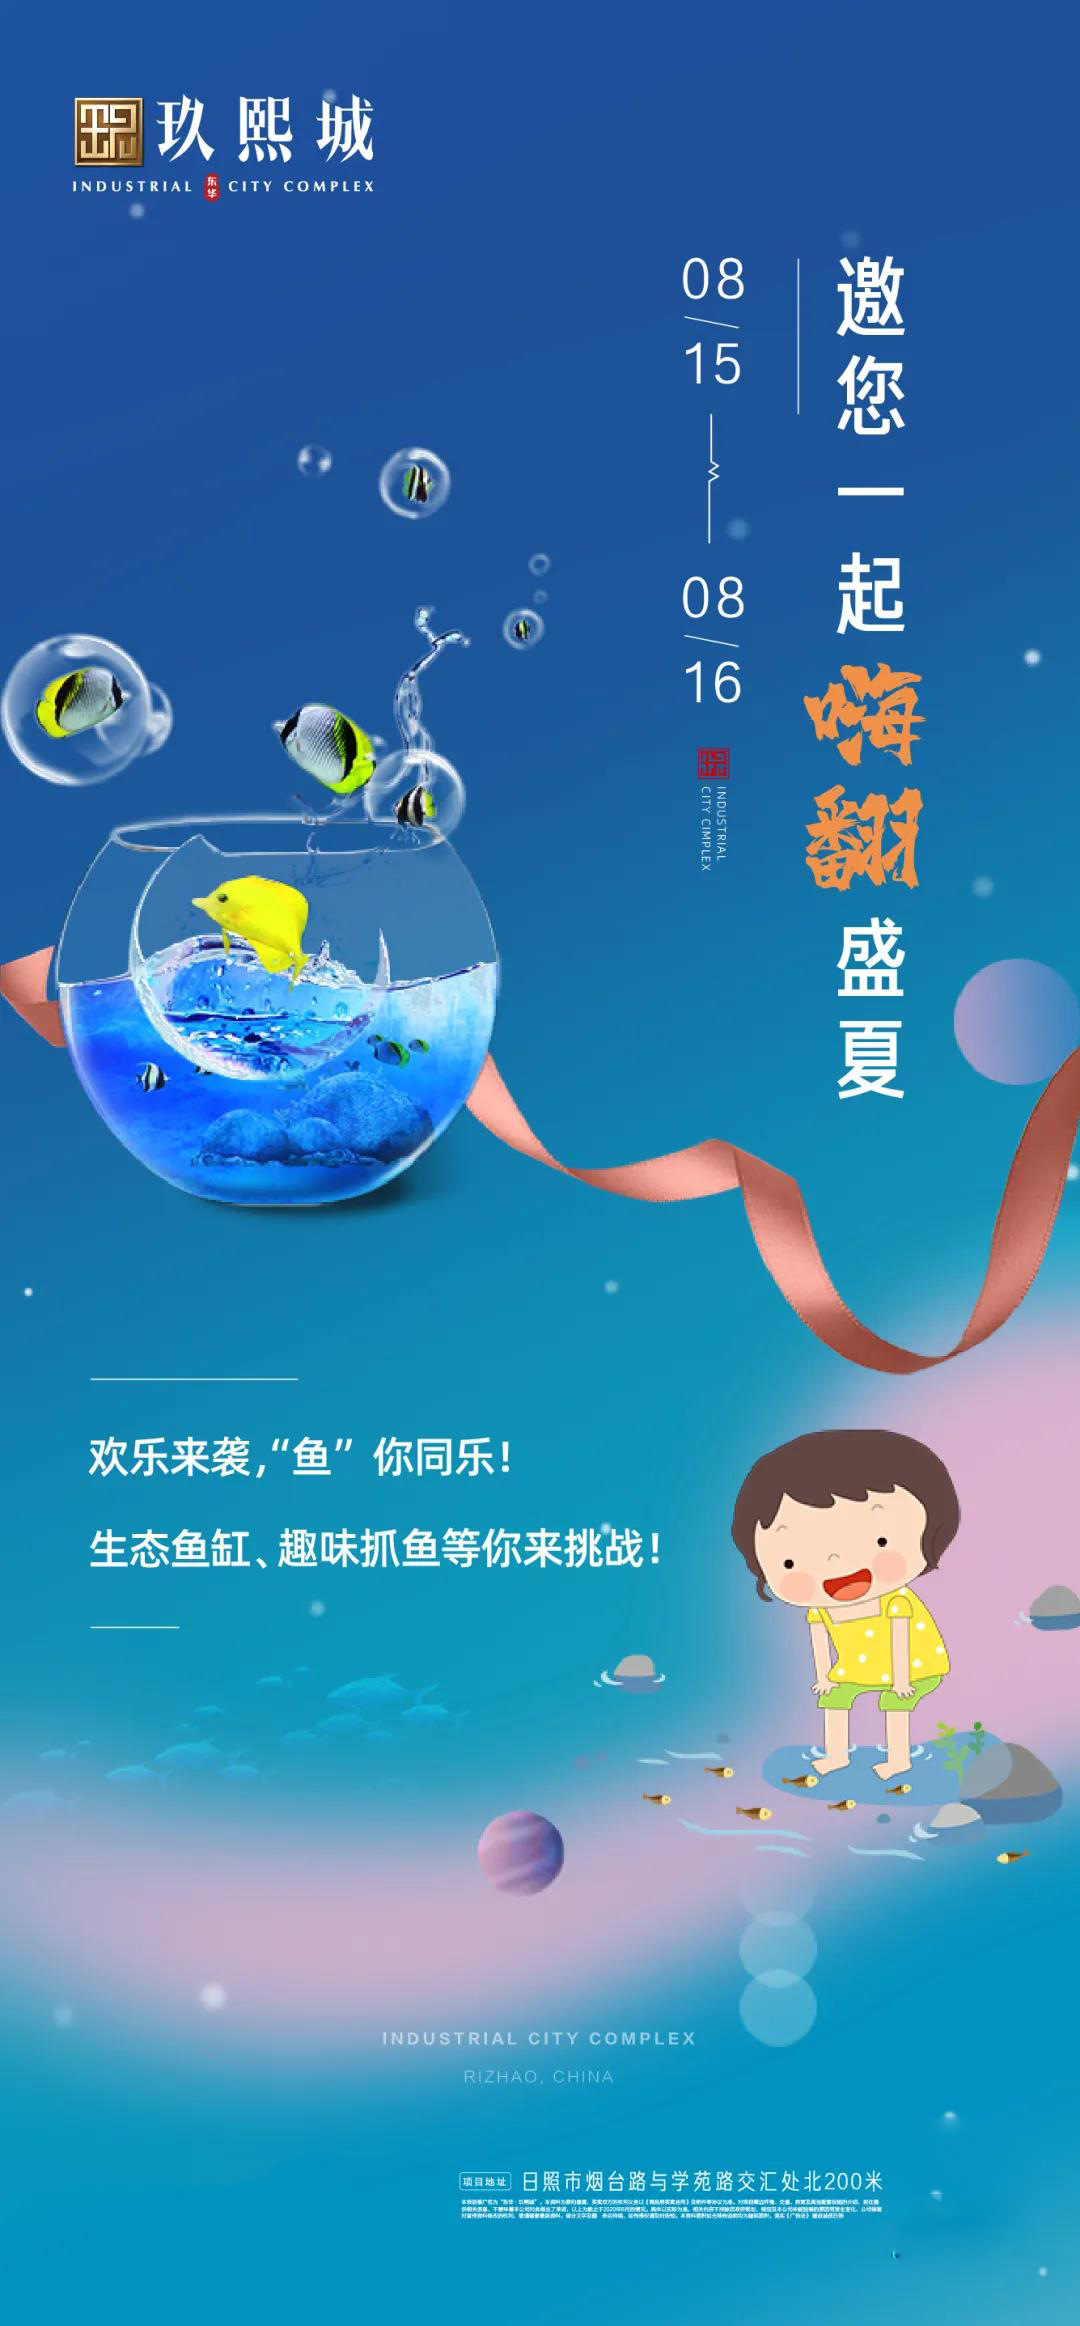 玖熙城捕鱼大作战，生态鱼缸DIY,鱼乐无极限！